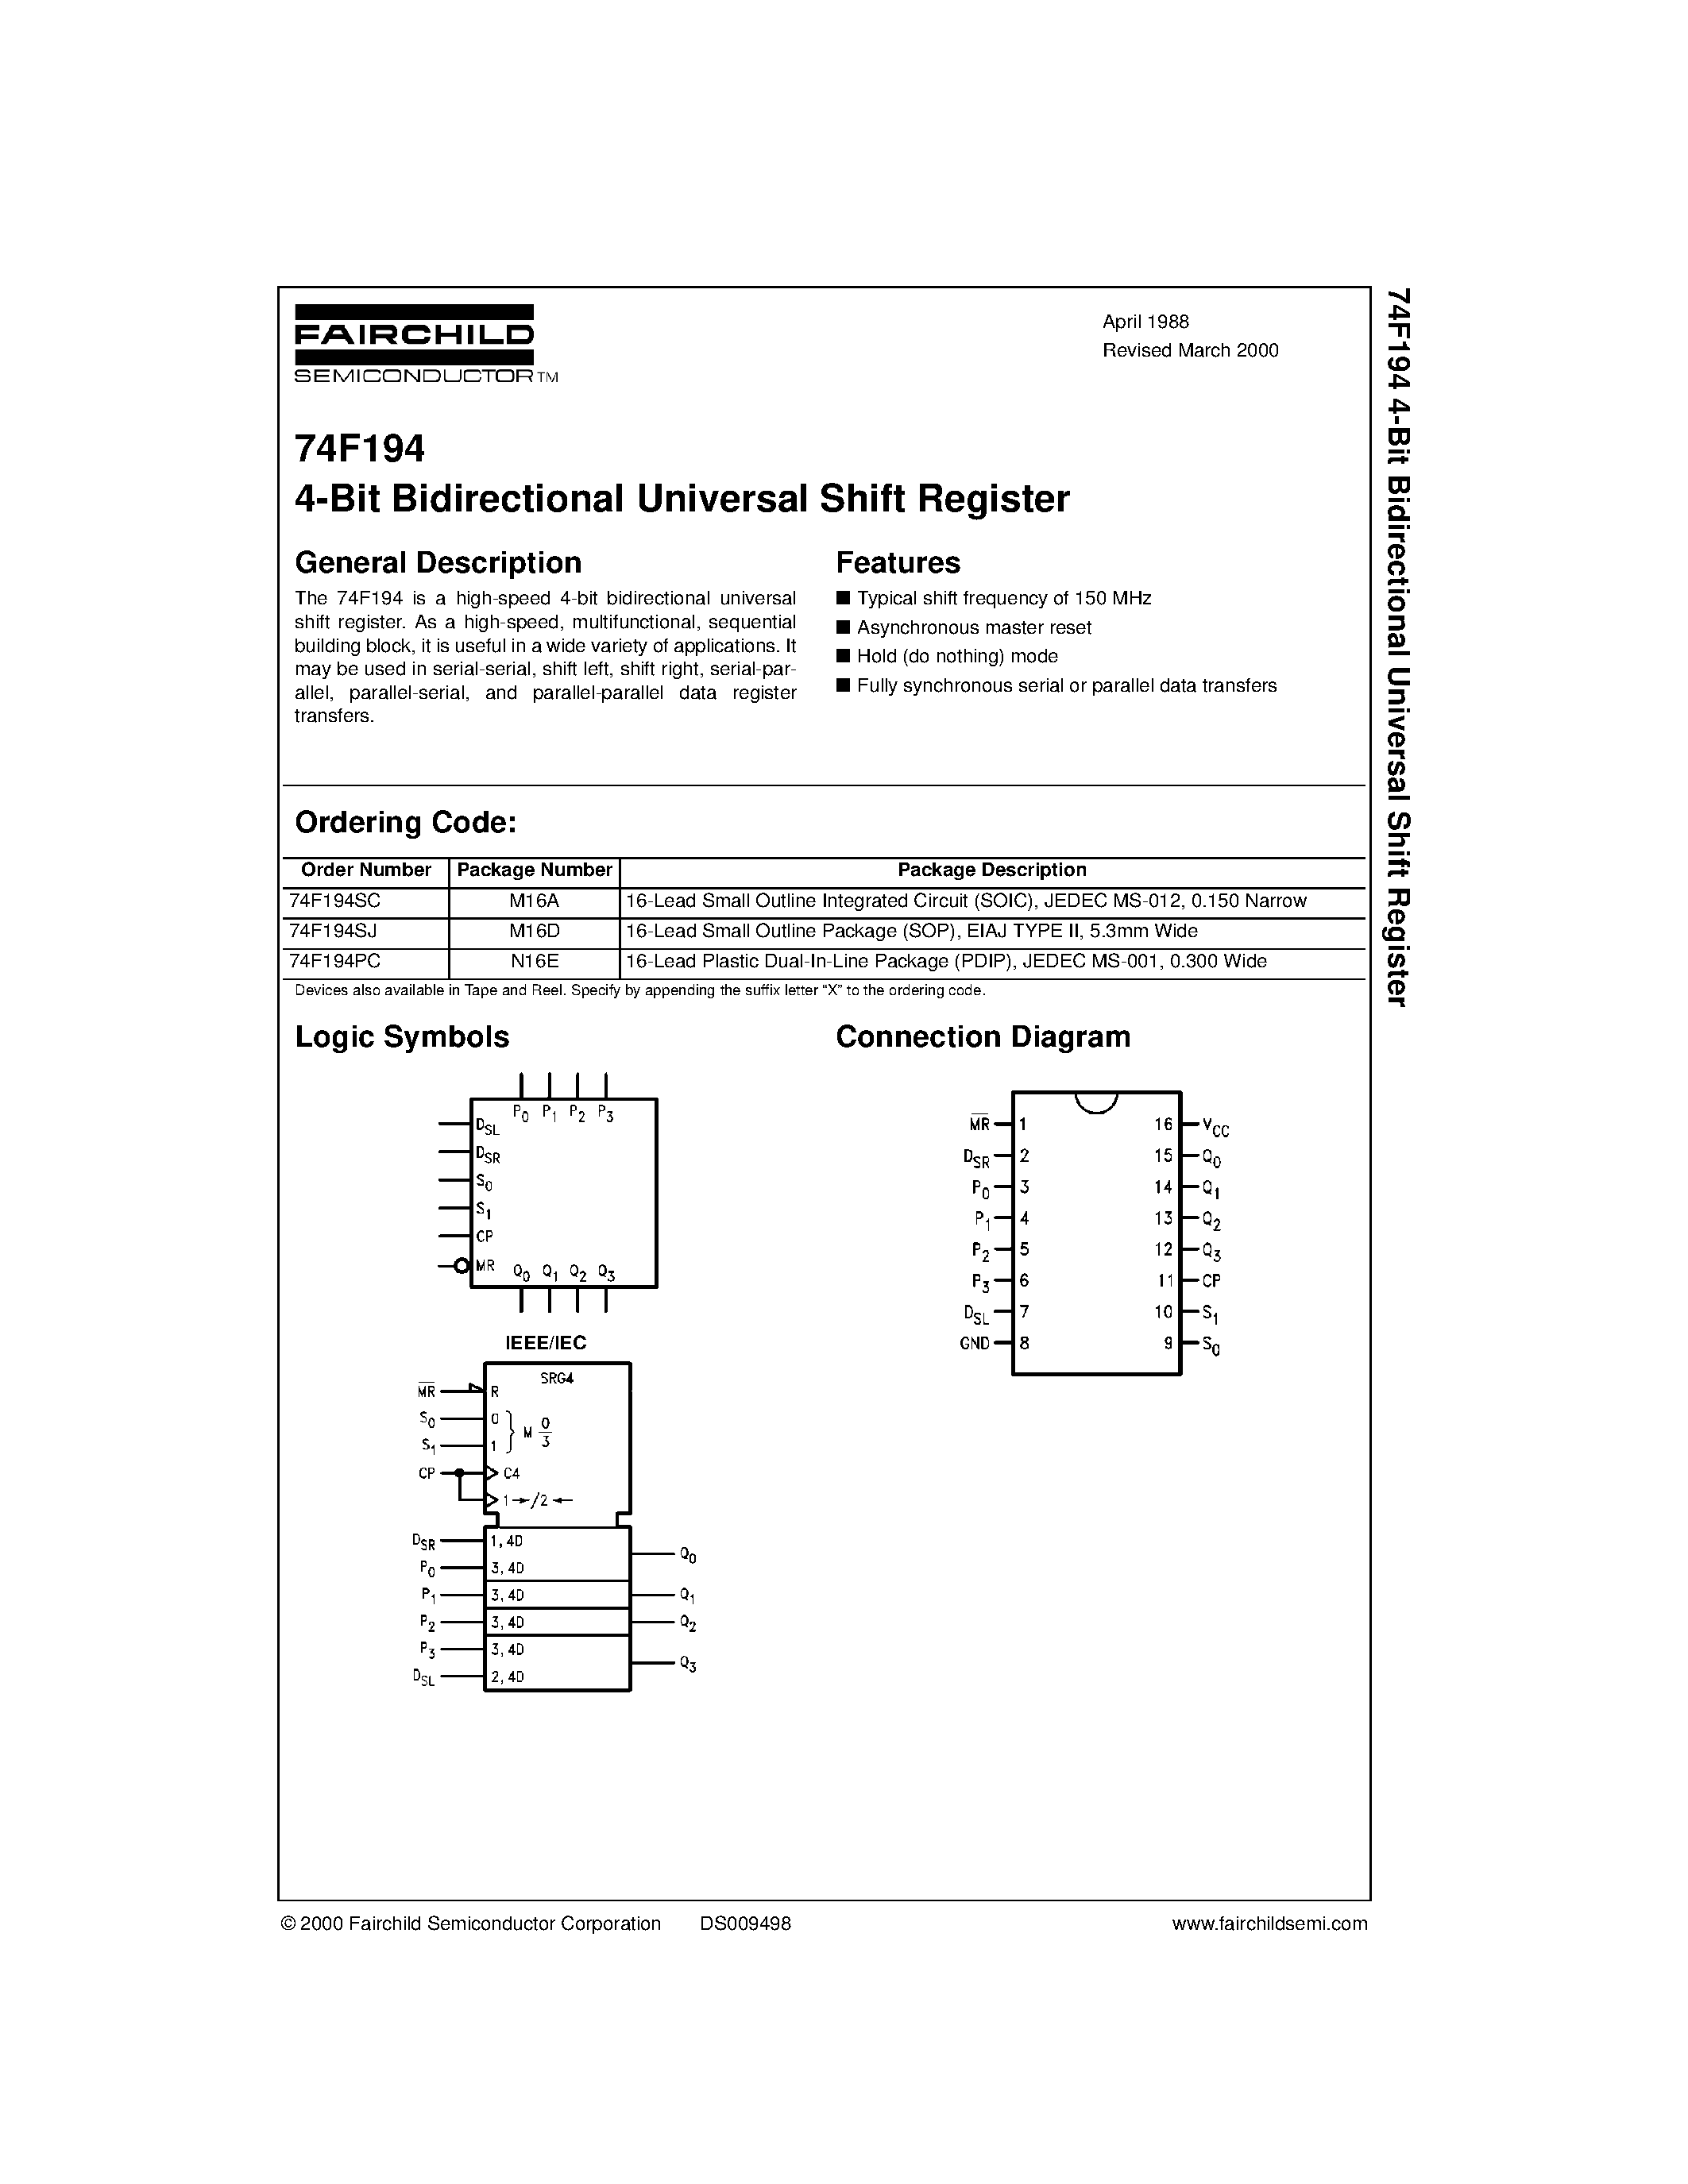 Даташит 74F194PC - 4-Bit Bidirectional Universal Shift Register страница 1